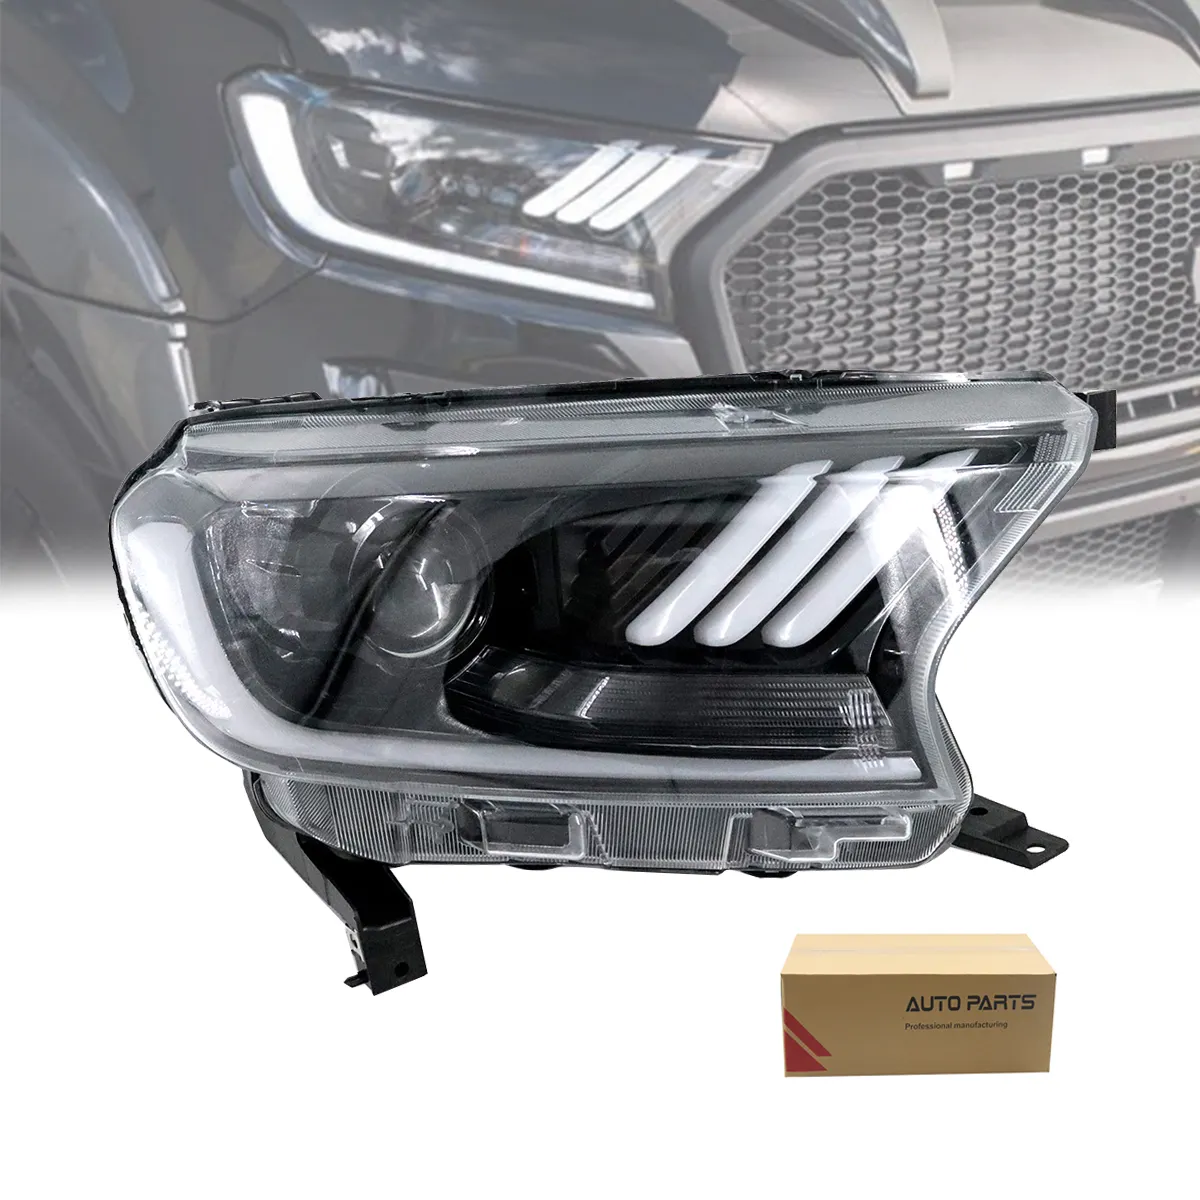 Rekabetçi fiyat yüksek seviye Pickup ön LED kafa lamba donanımı Ford Ranger araba için LED far